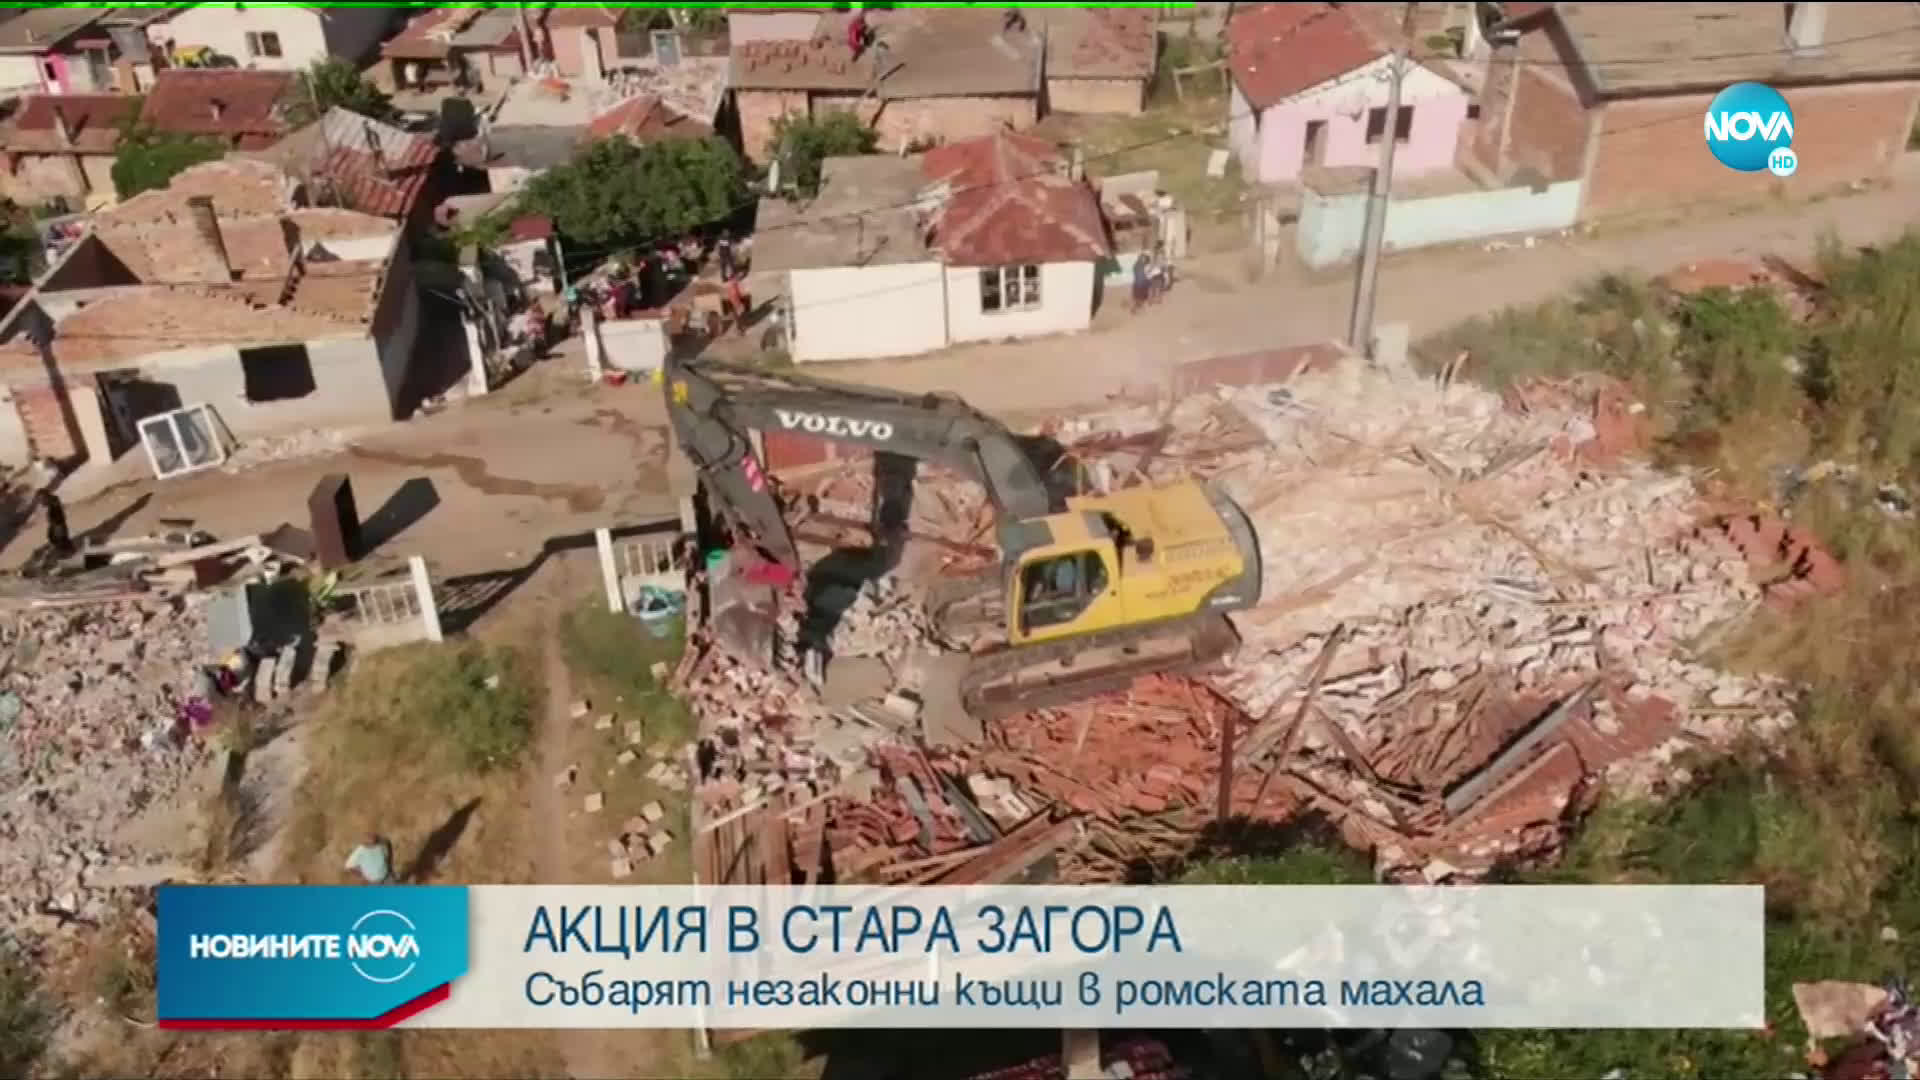 Събарят незаконни постройки в ромската махала в Стара Загора